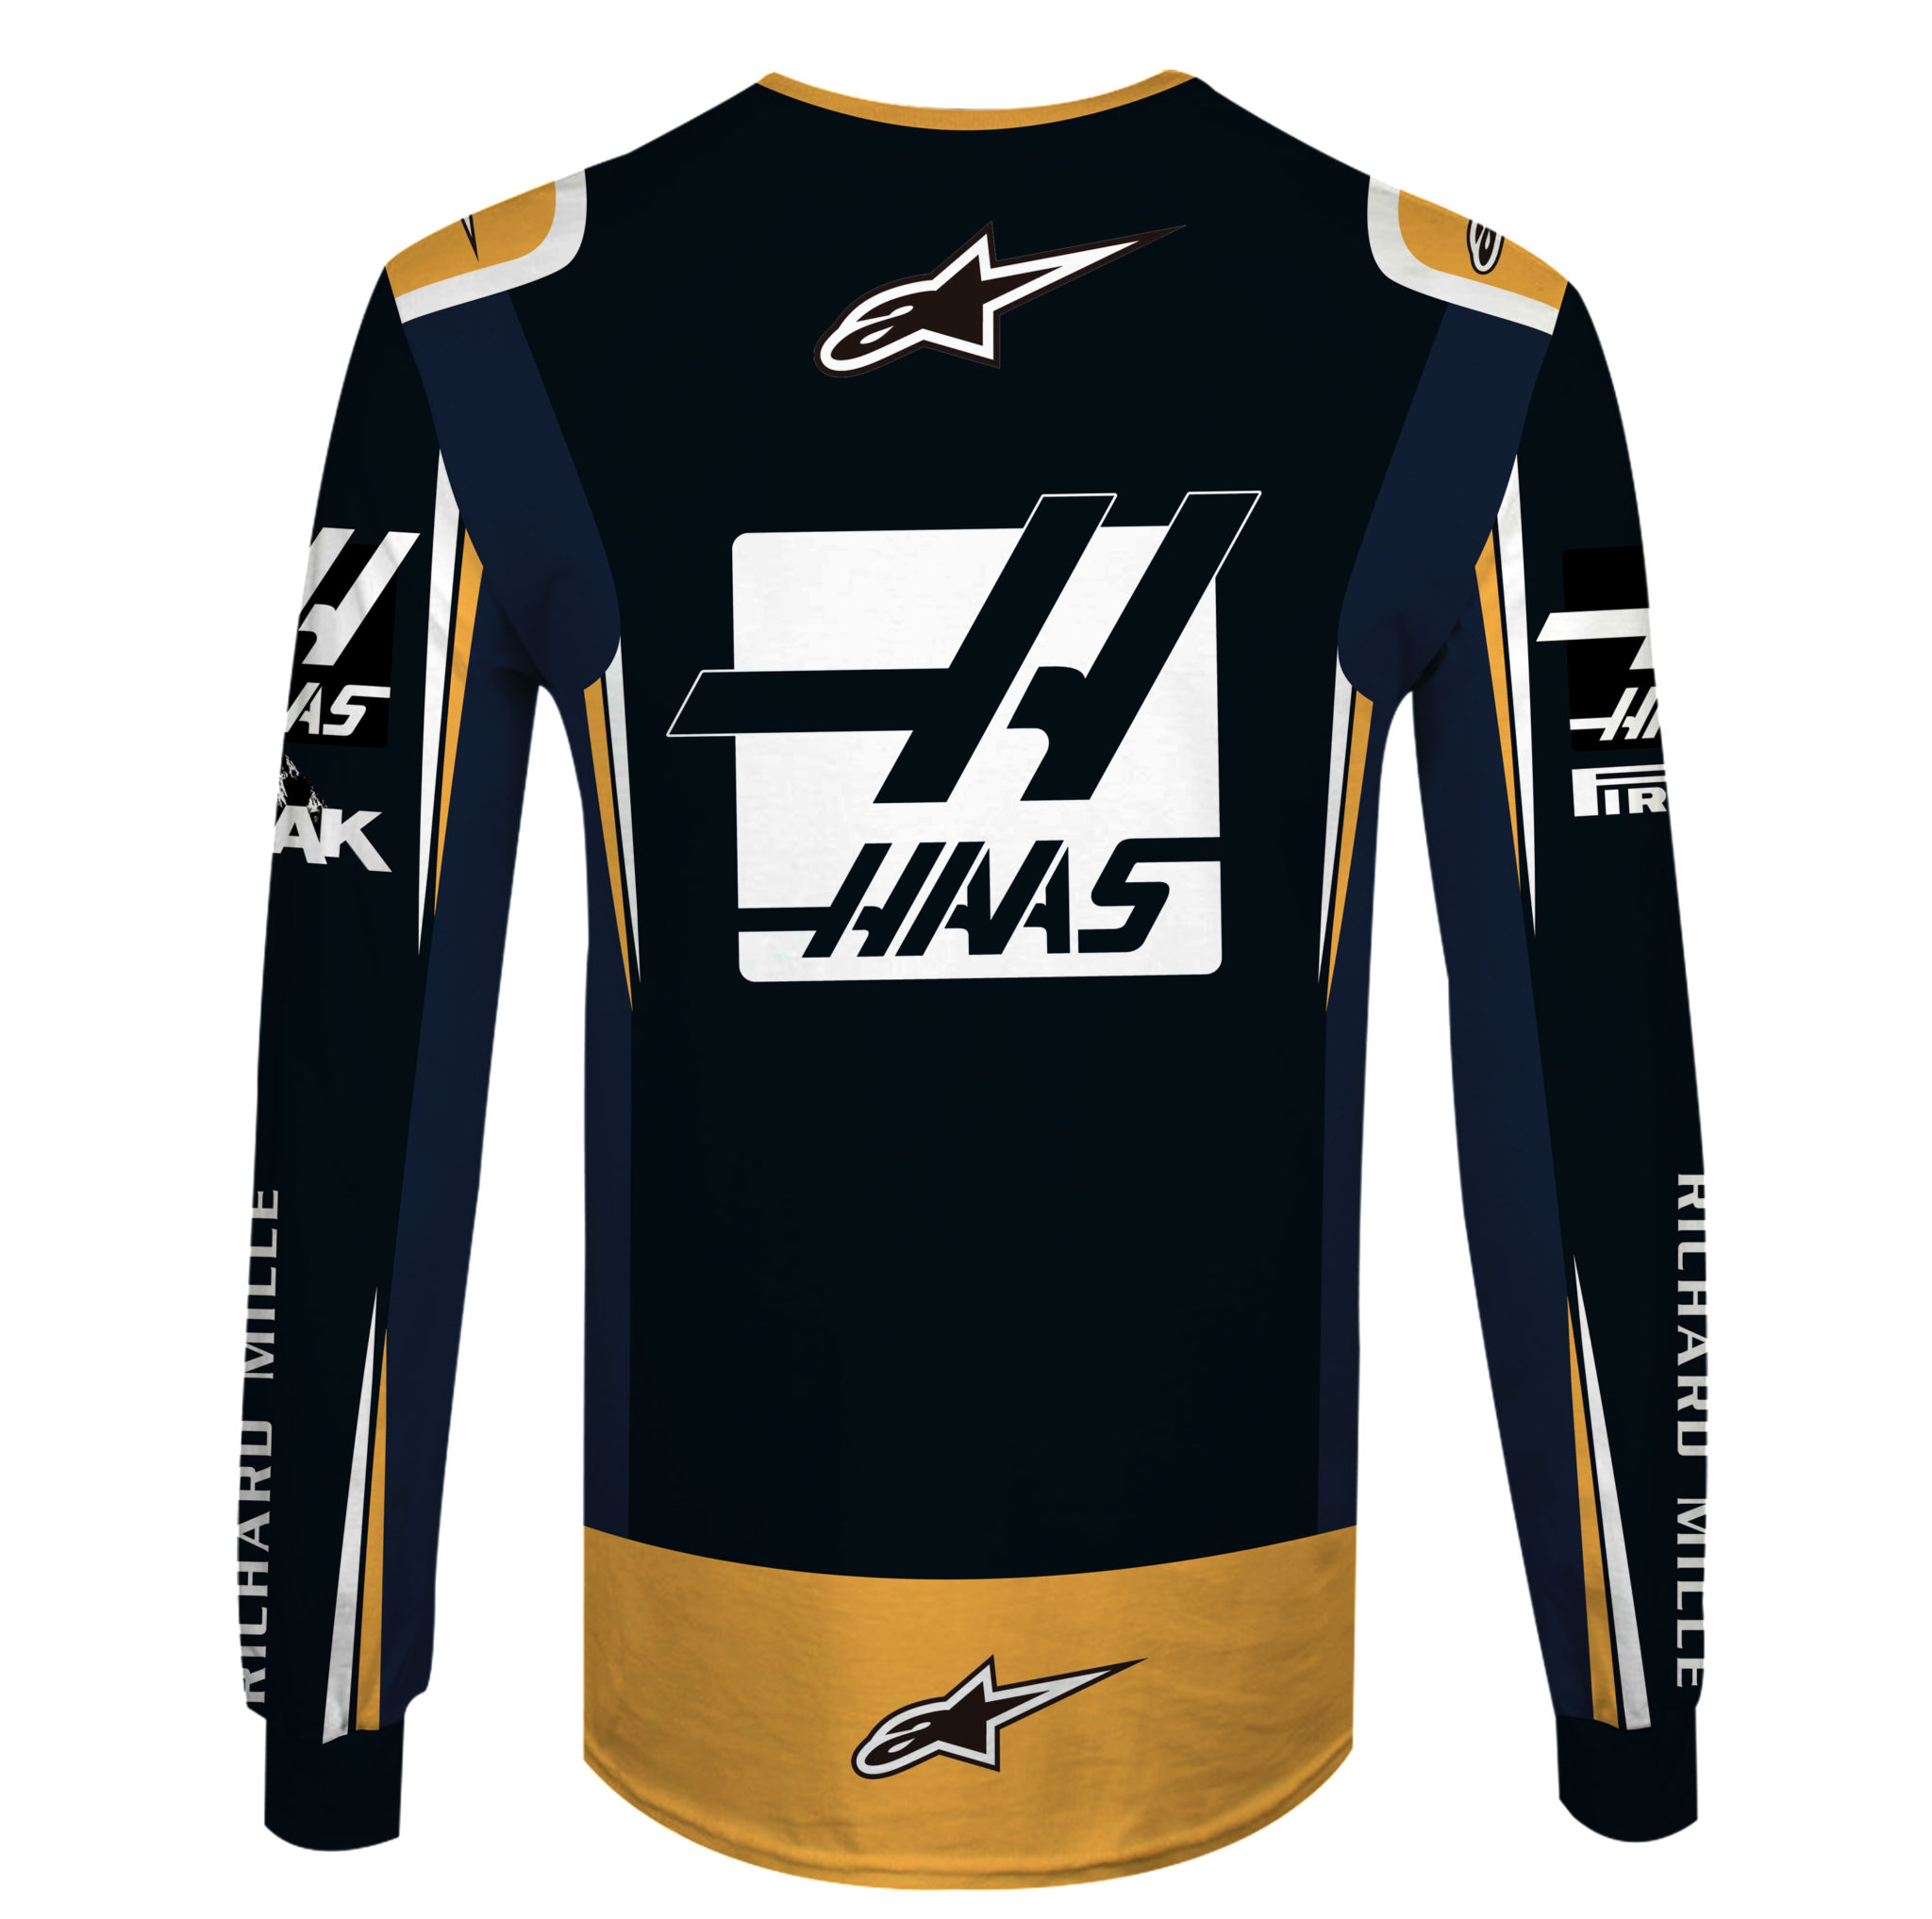 Kevin Magnussen, Romain Grosjean Hoodie Haas F1 Team Sweater Rich Energy, Haas F1 Team, Jack & Jones, Excl’Jets, Richard Mille Personalized Hoodie